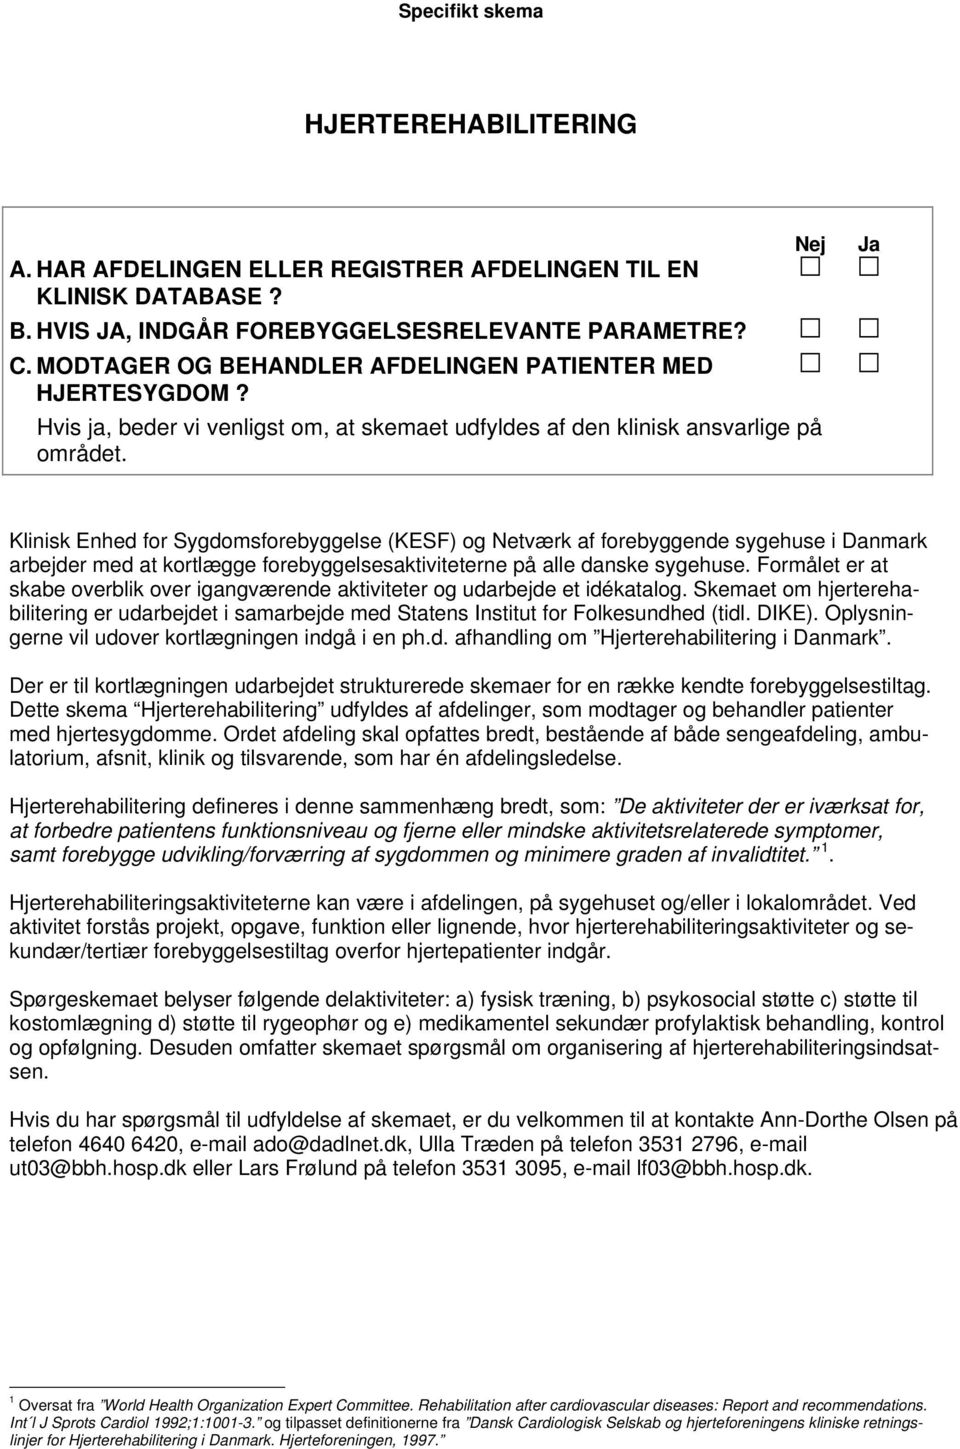 Nej Ja Klinisk Enhed for Sygdomsforebyggelse (KESF) og Netværk af forebyggende sygehuse i Danmark arbejder med at kortlægge forebyggelsesaktiviteterne på alle danske sygehuse.